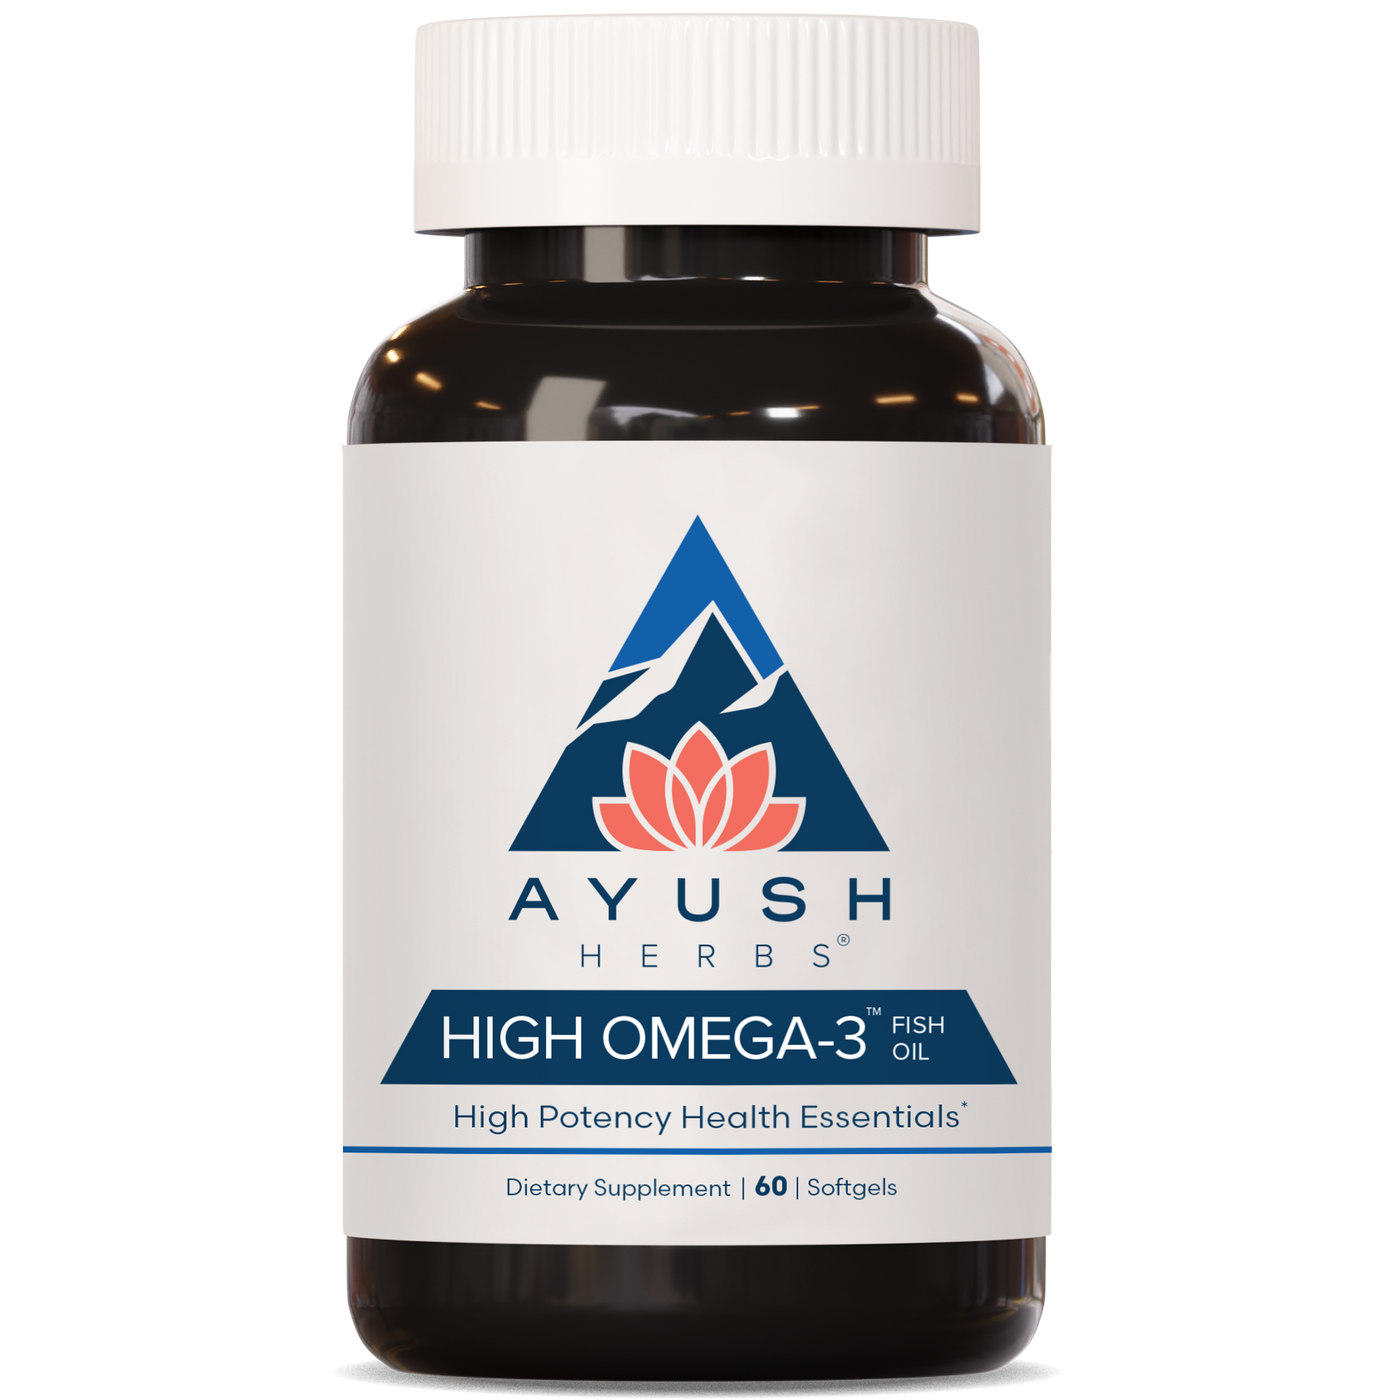 High Omega 3 60 gels Curated Wellness